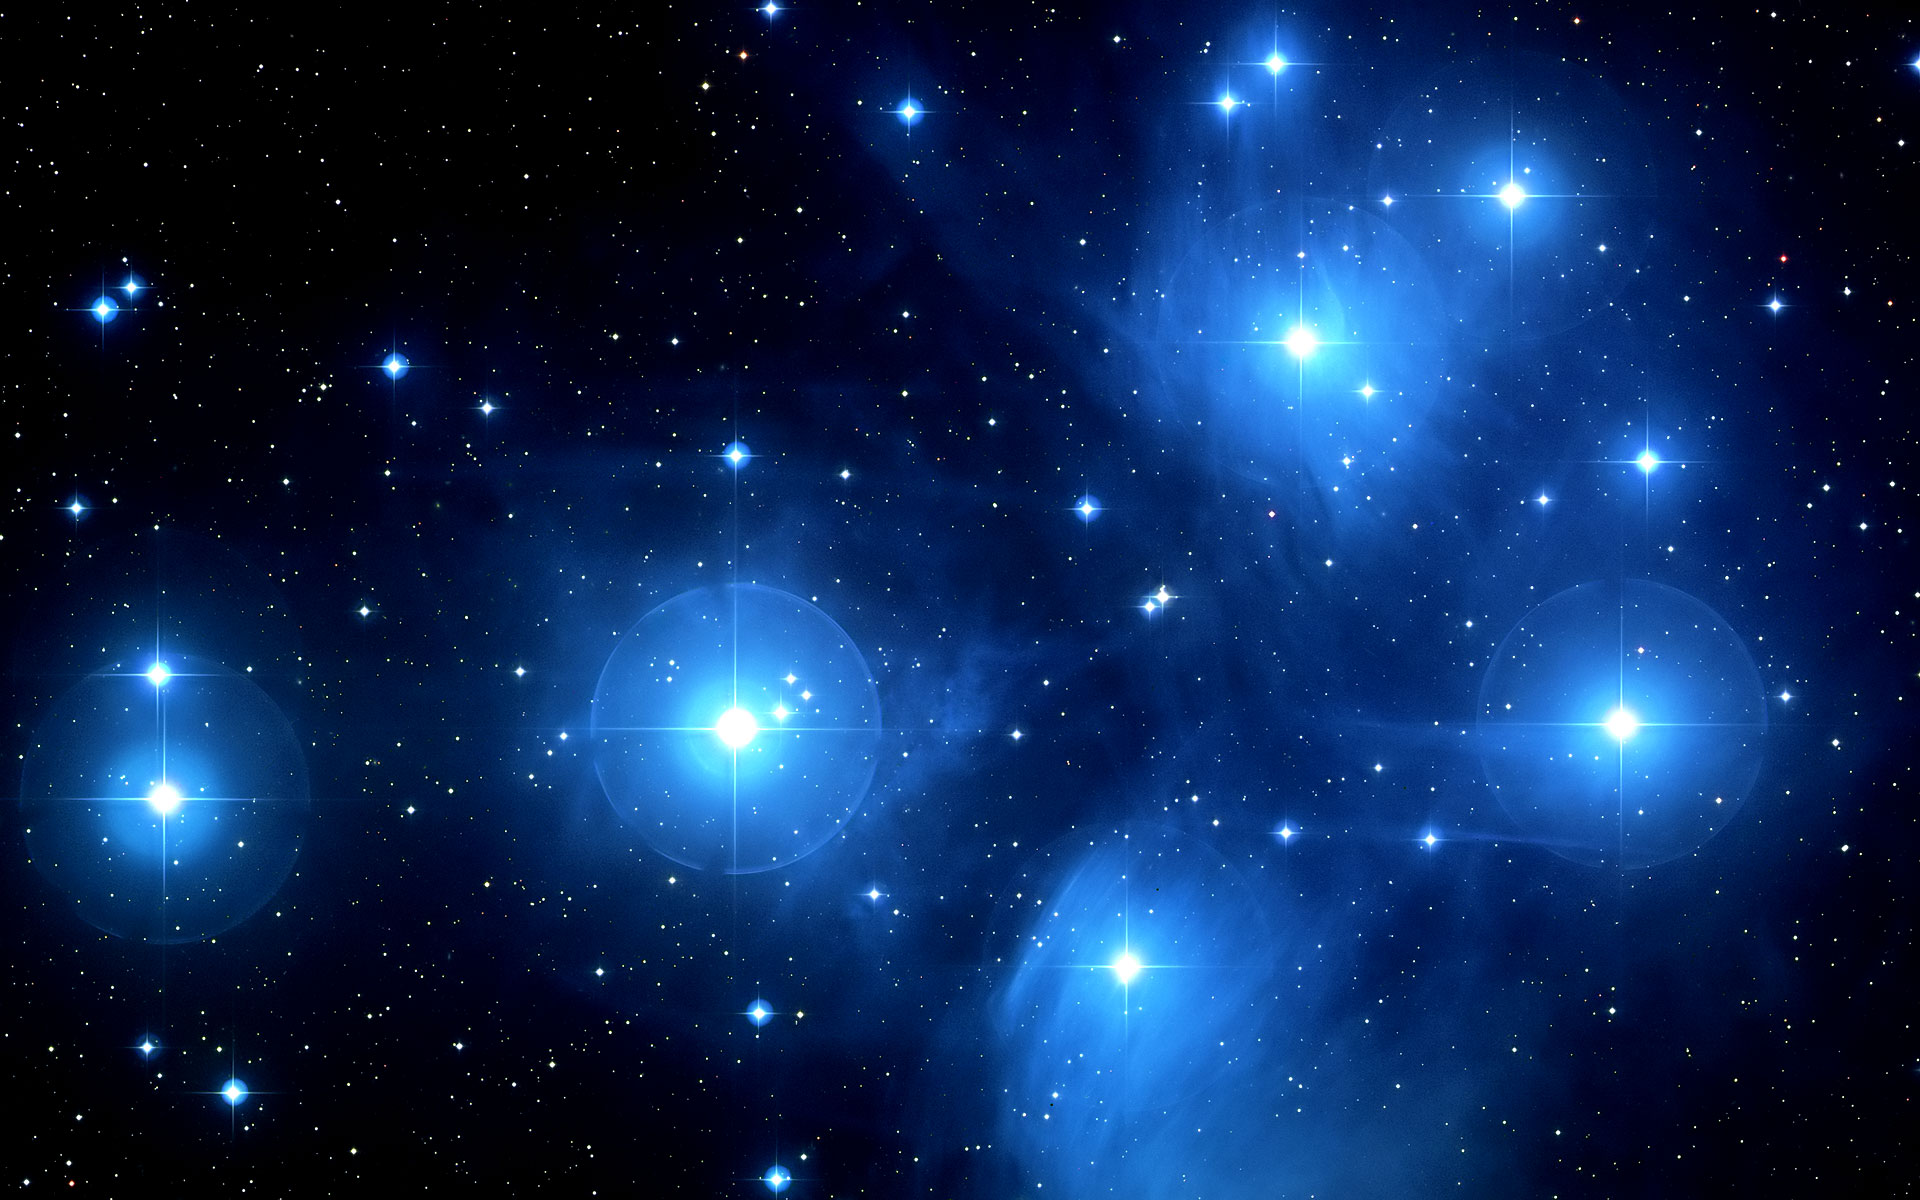 Les Pléiades (M45), un sublime groupe d'étoiles de la constellation du Taureau